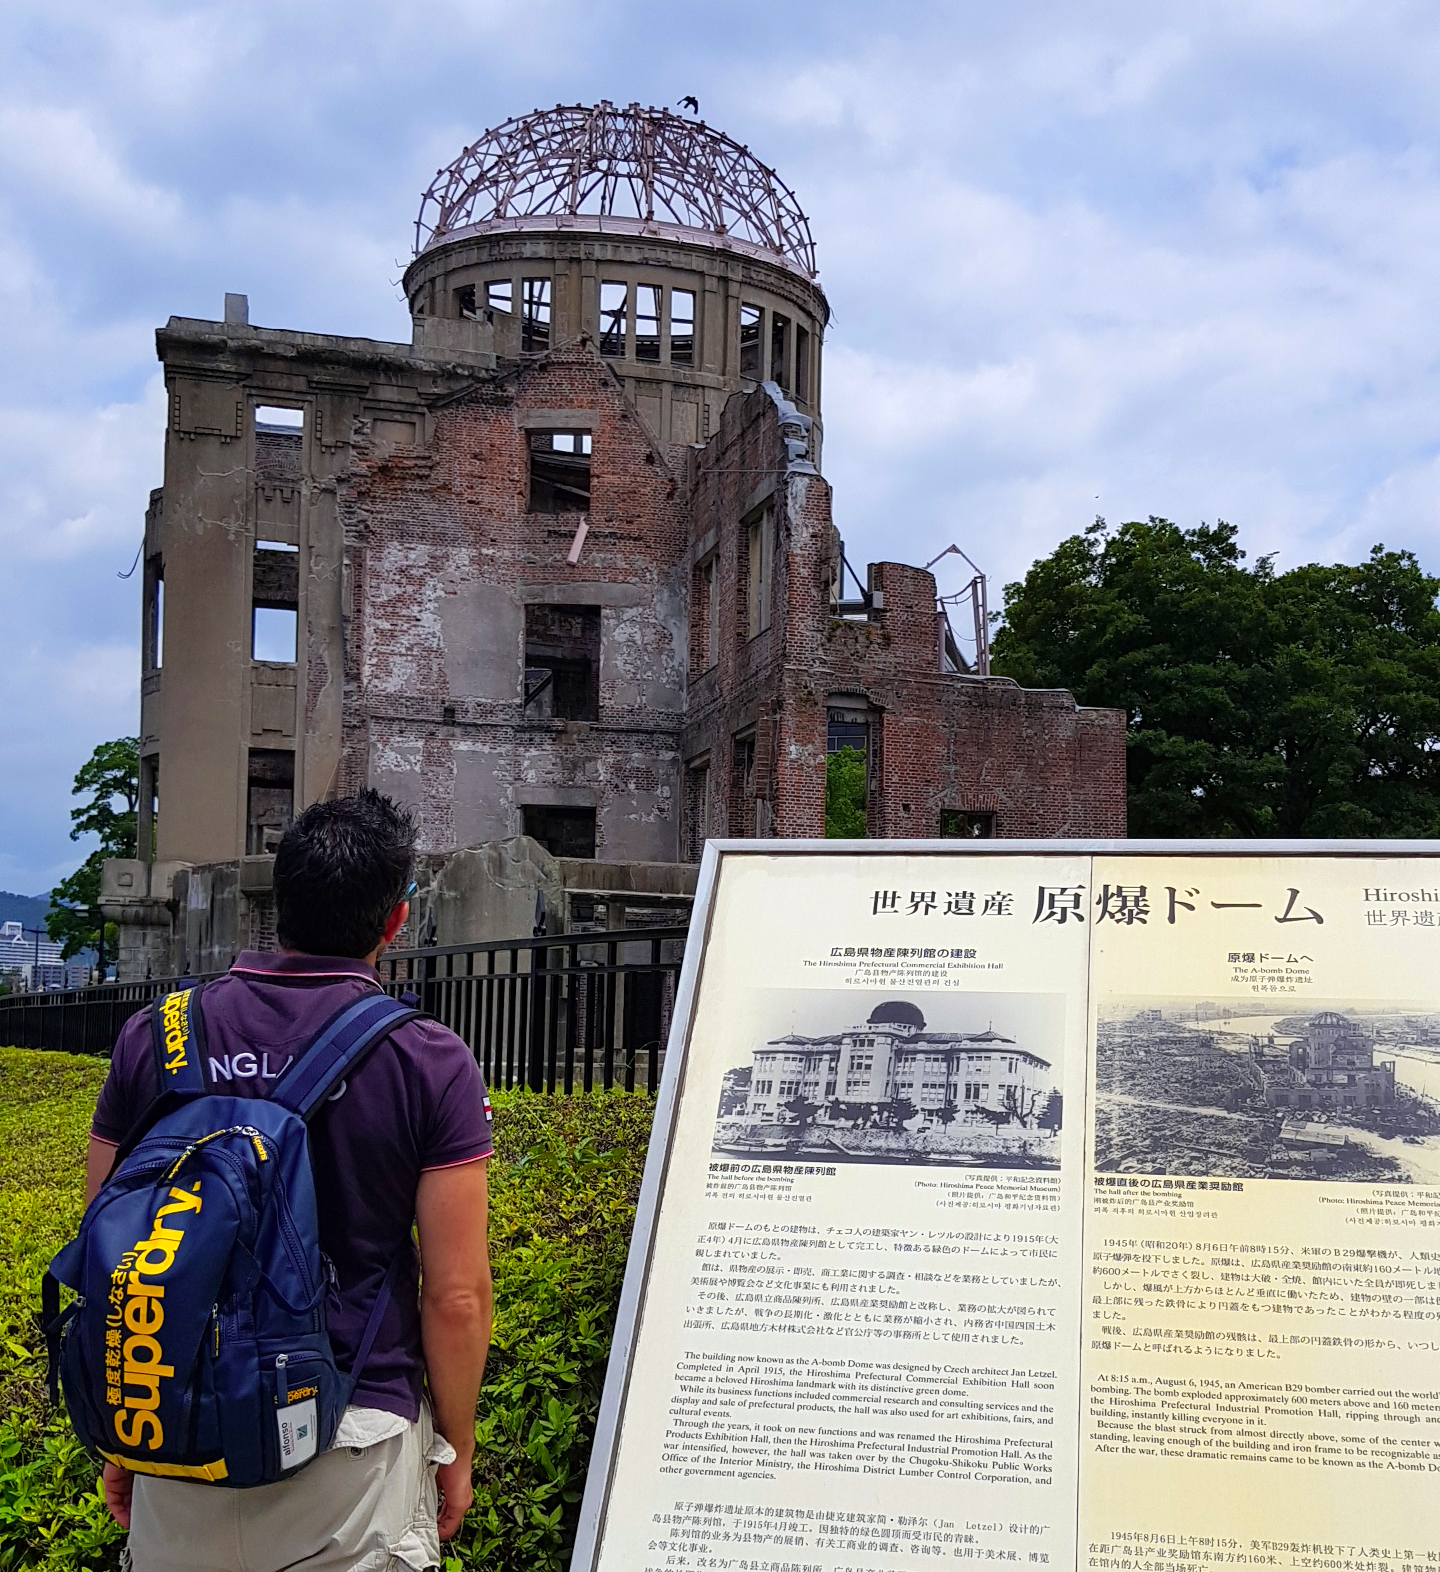 Hiroshima bomba atómica - Hiroshima Dome - Viajar a Japón - ruta por Japón en dos semanas